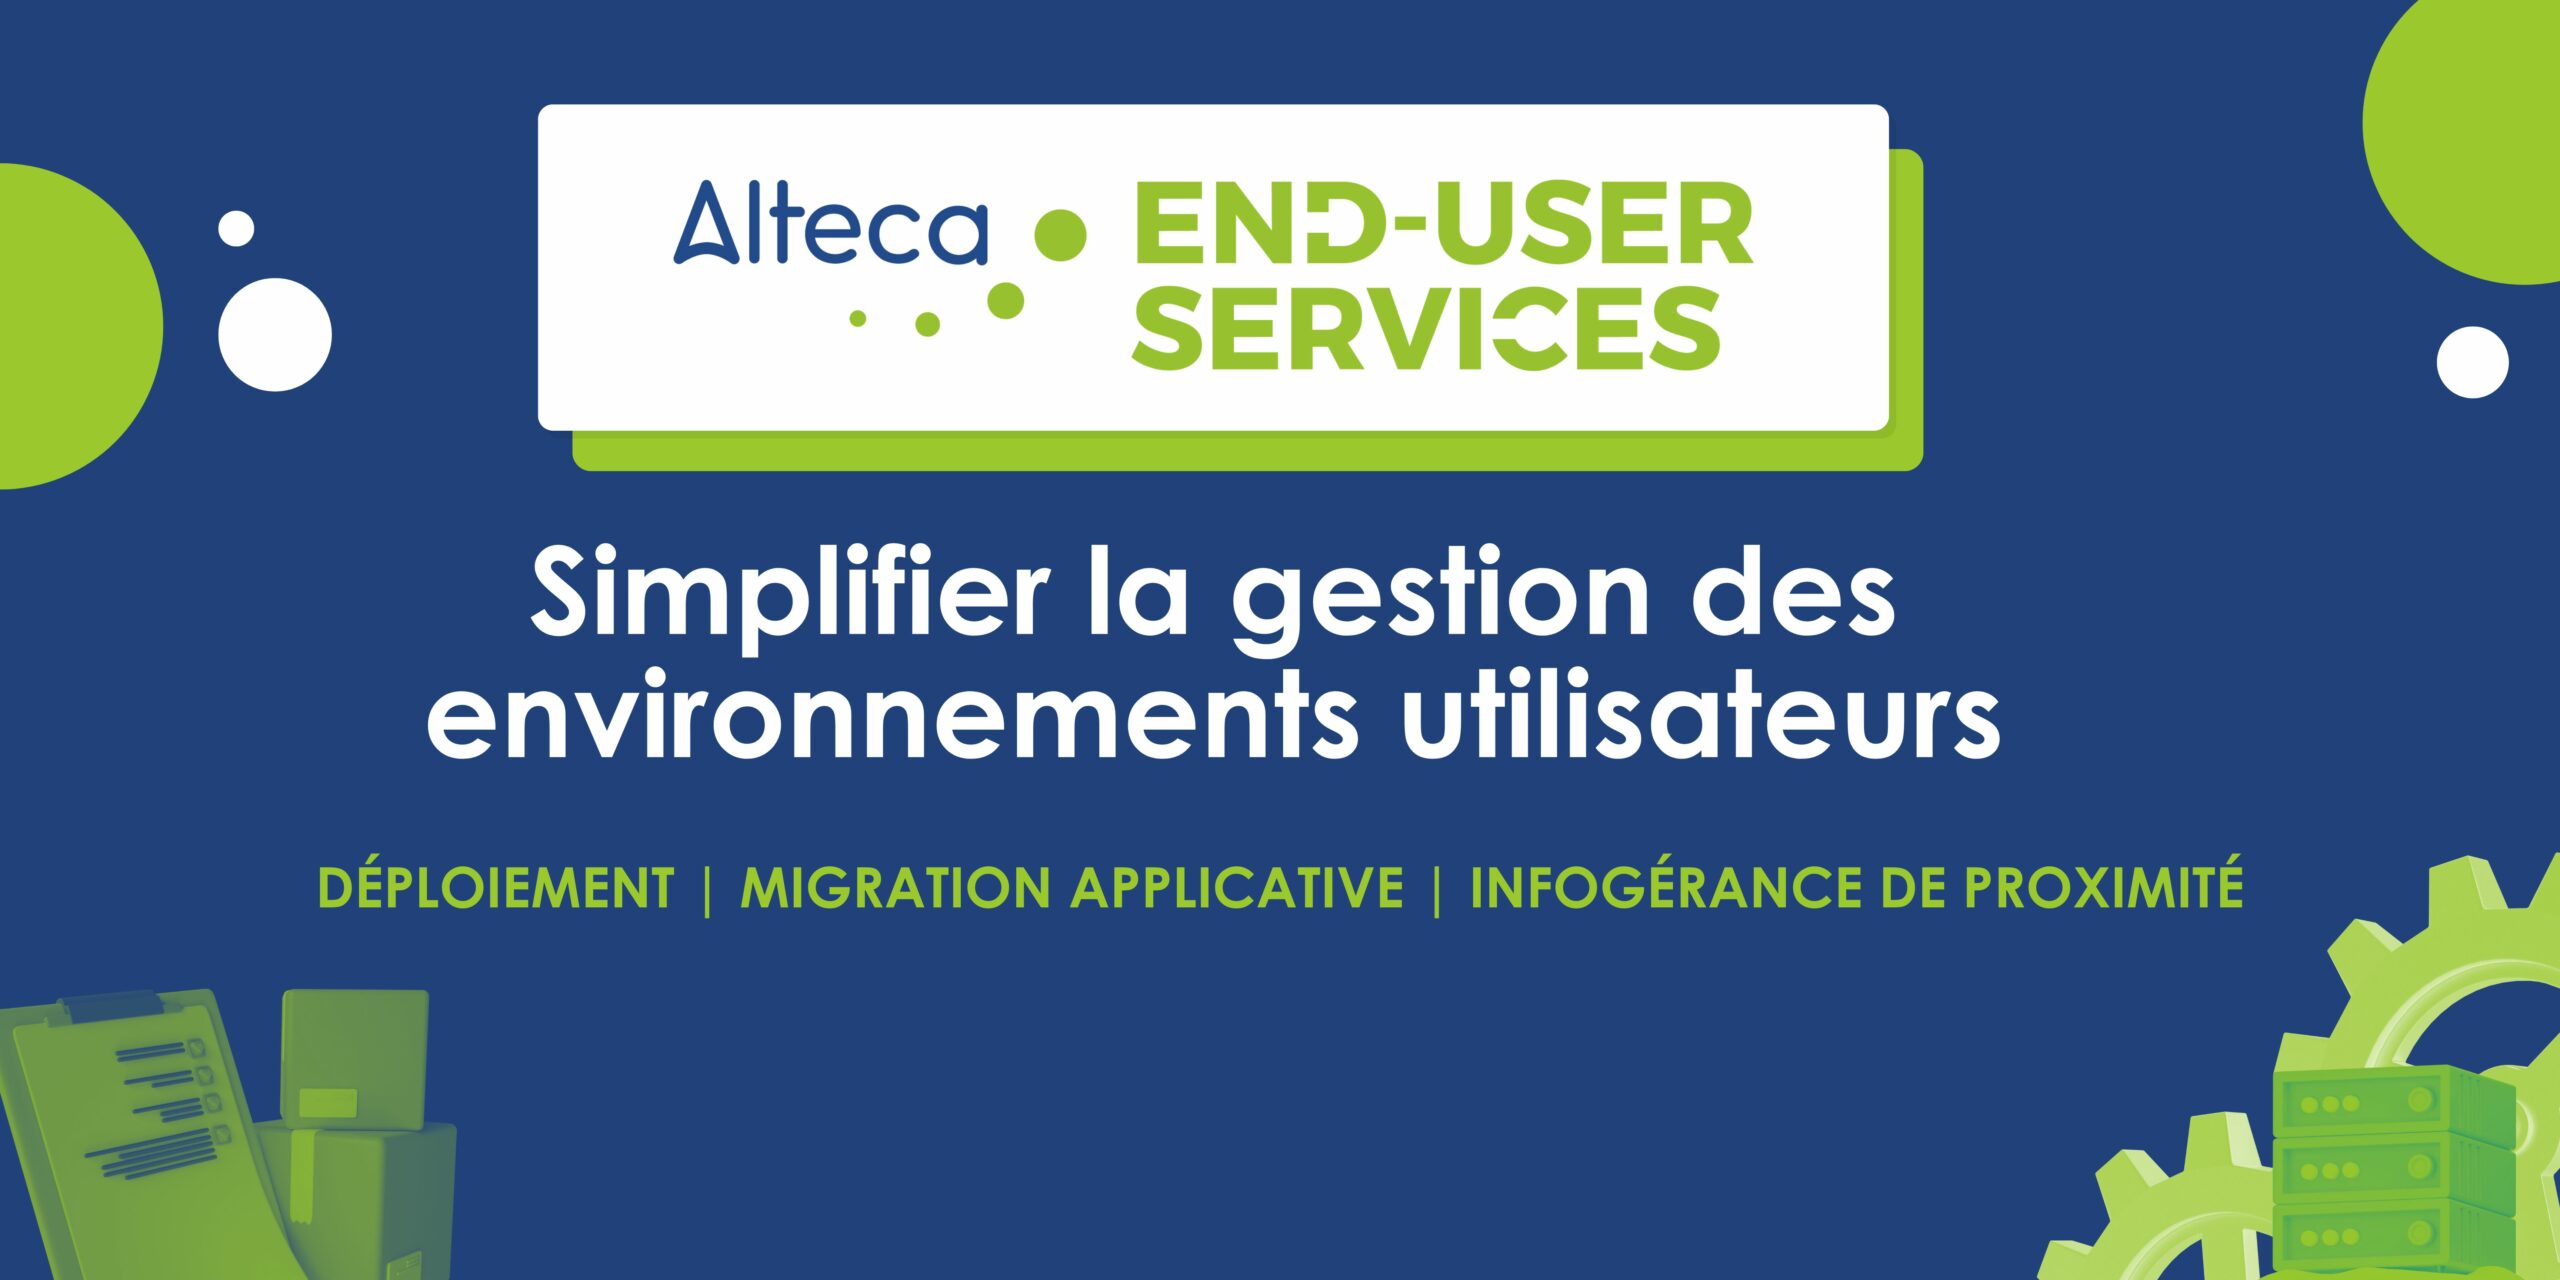 Alteca End-User Services : simplifier la gestion des environnements utilisateurs